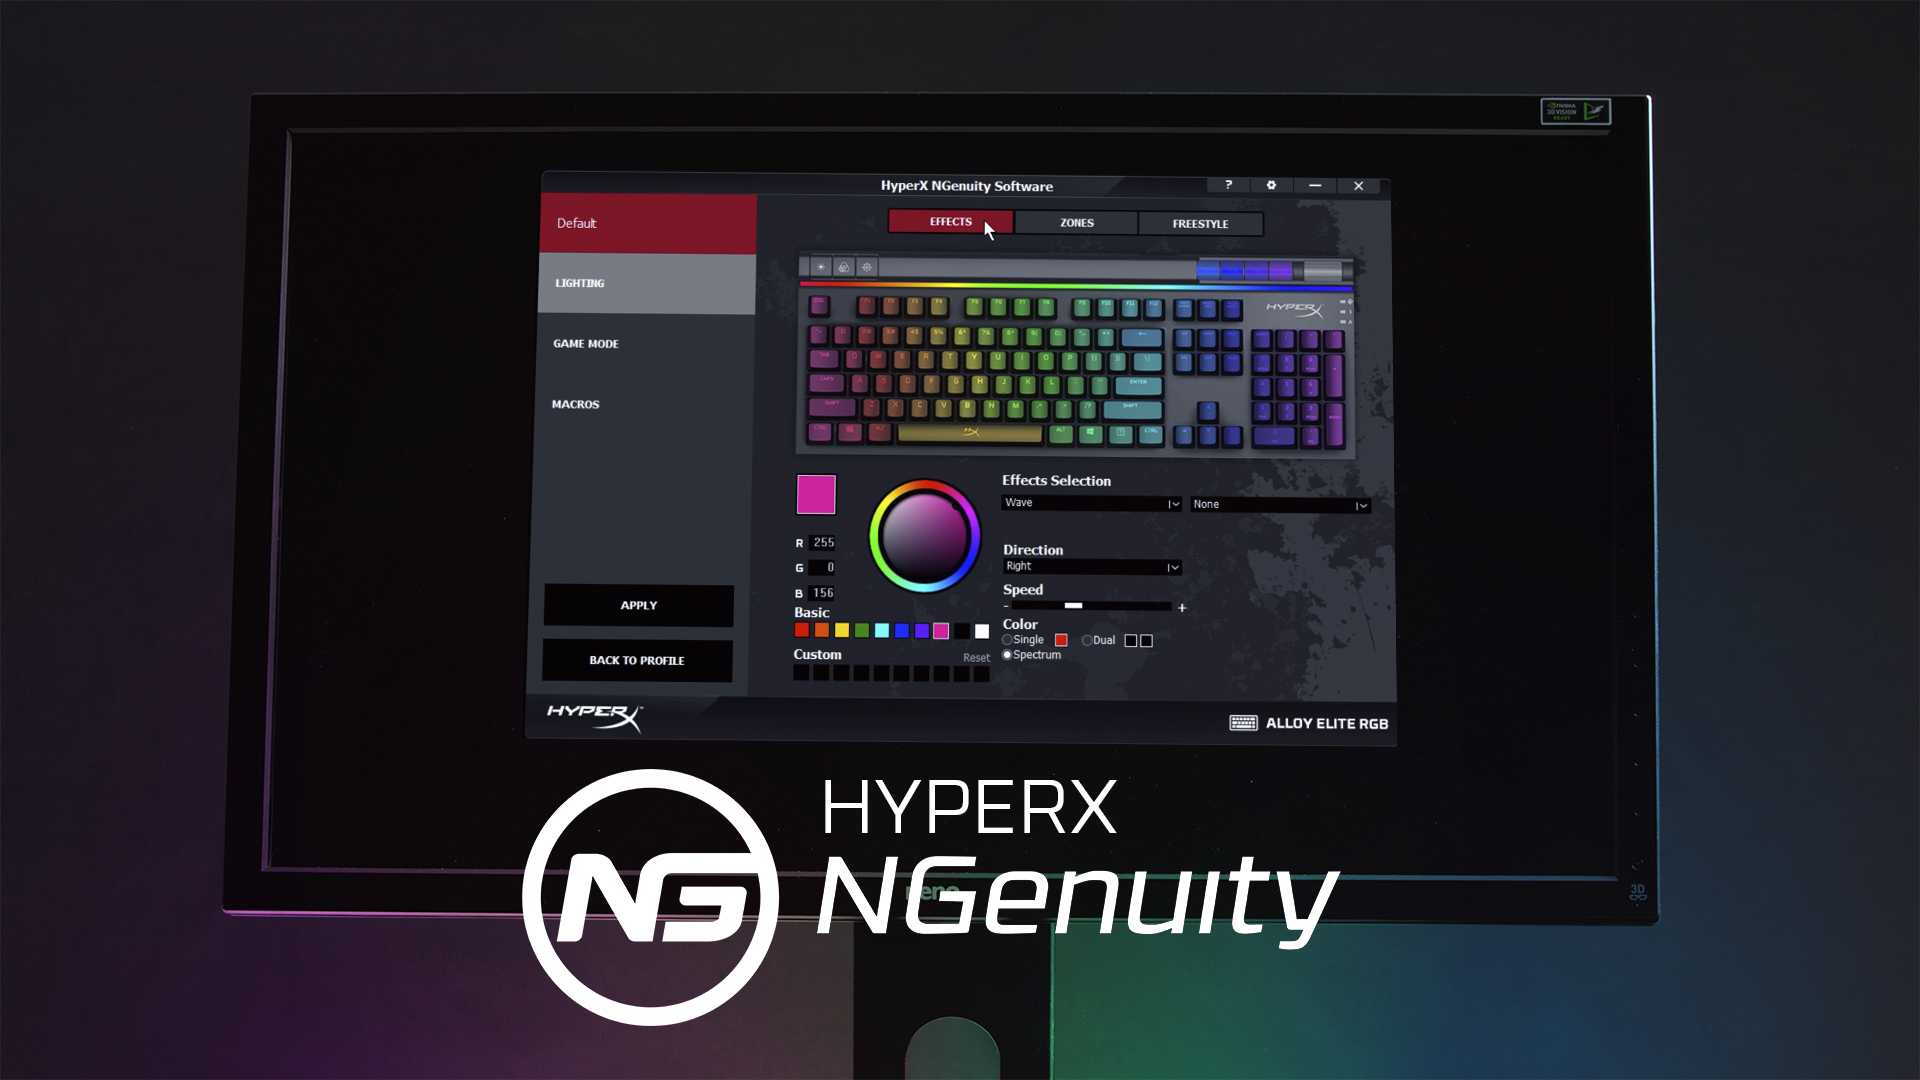 Personaliza tu Alloy Elite RGB con el software HyperX NGenuity